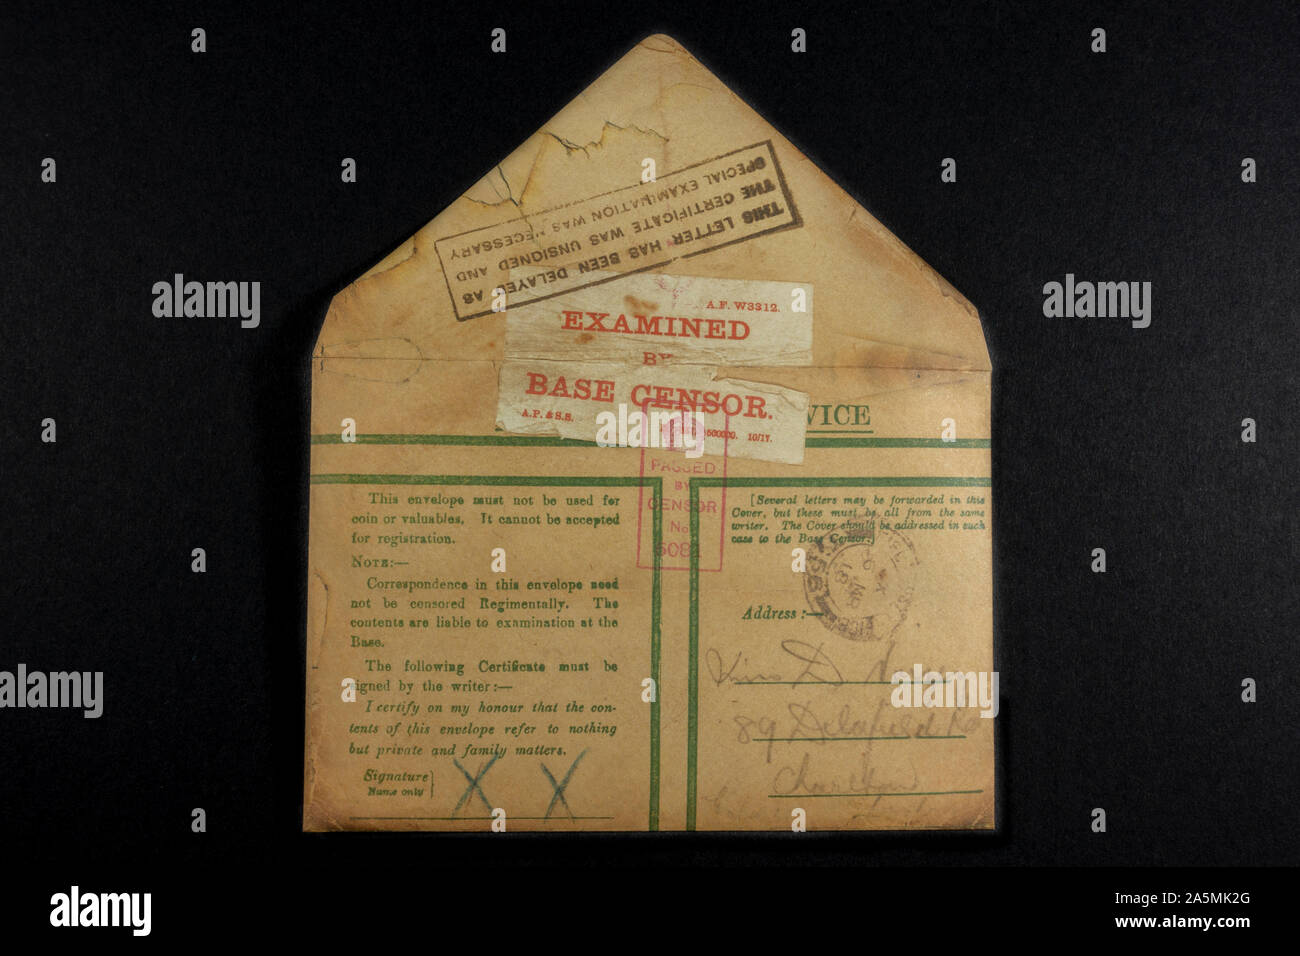 Un servicio activo del ejército de sobres de privilegio con "censurar pasa' estampado, un pedazo de réplicas de objetos desde la época de la Primera Guerra Mundial. Foto de stock